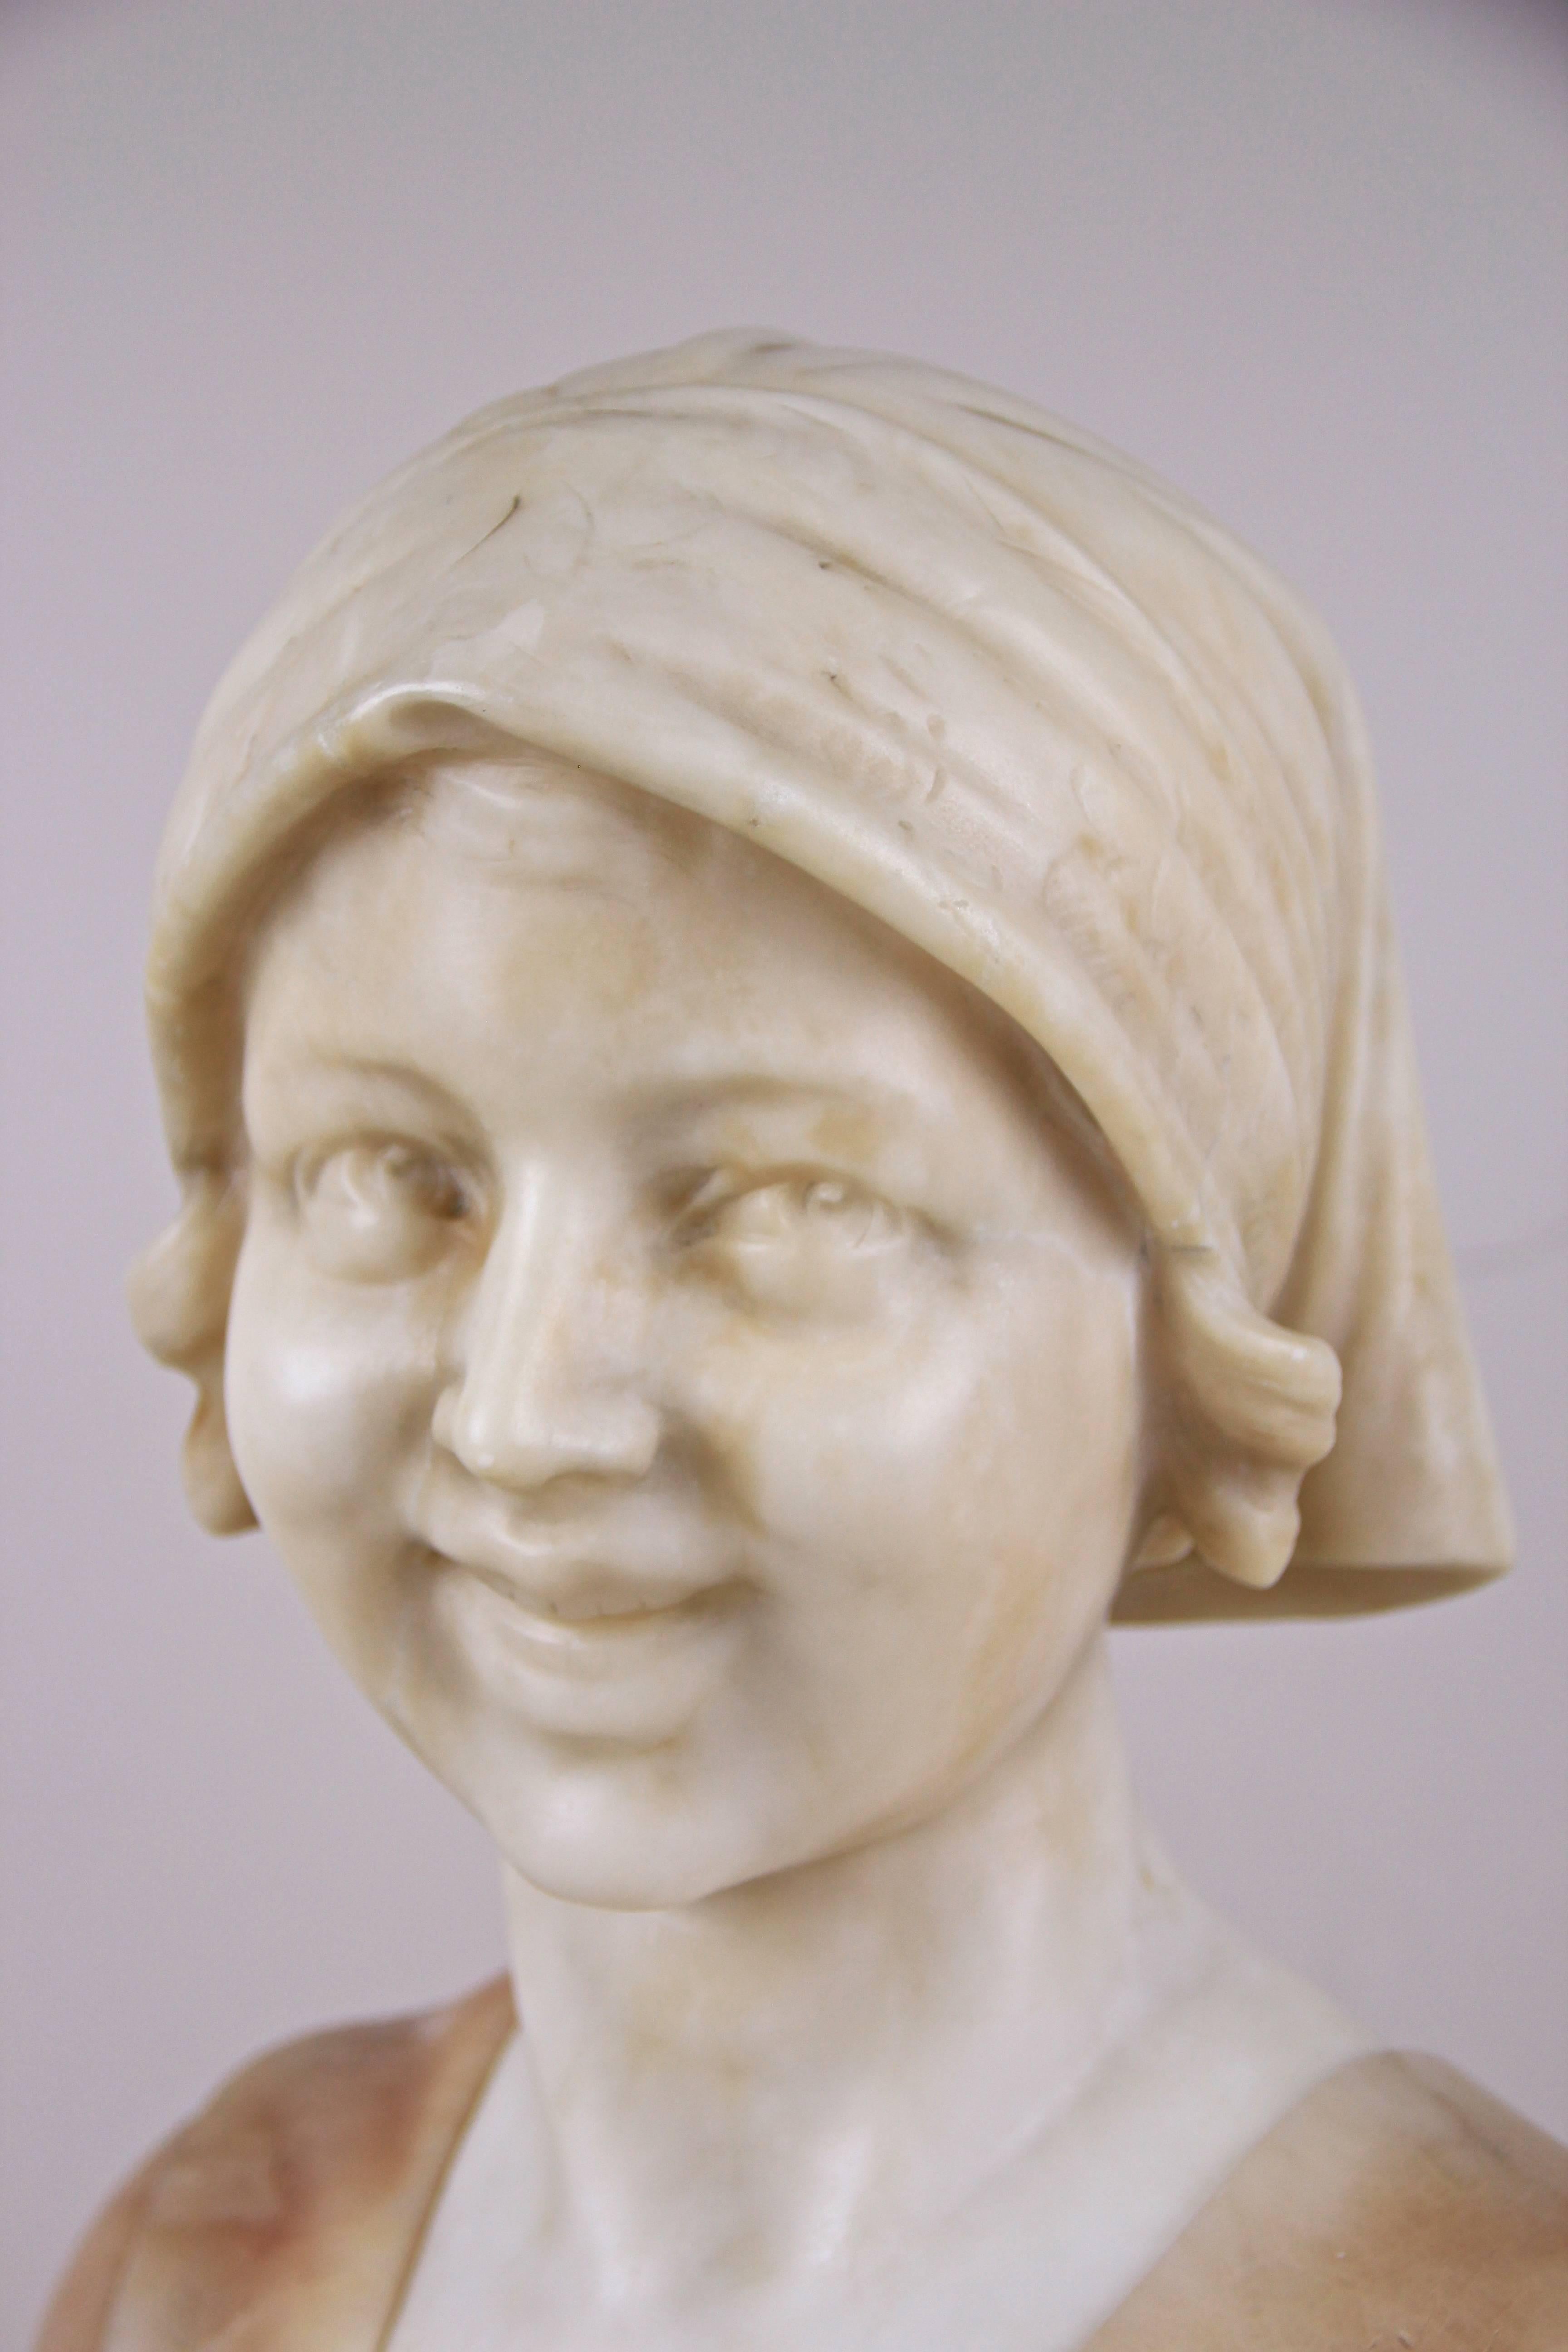 Hübsche Jugendstilbüste einer jungen Frau, hergestellt in Italien zu Beginn des 20. Jahrhunderts. Aus feinem Alabaster gearbeitet, legte der Bildhauer größten Wert auf die Details. Achten Sie einfach auf die Mimik - sie sieht sehr realistisch aus.